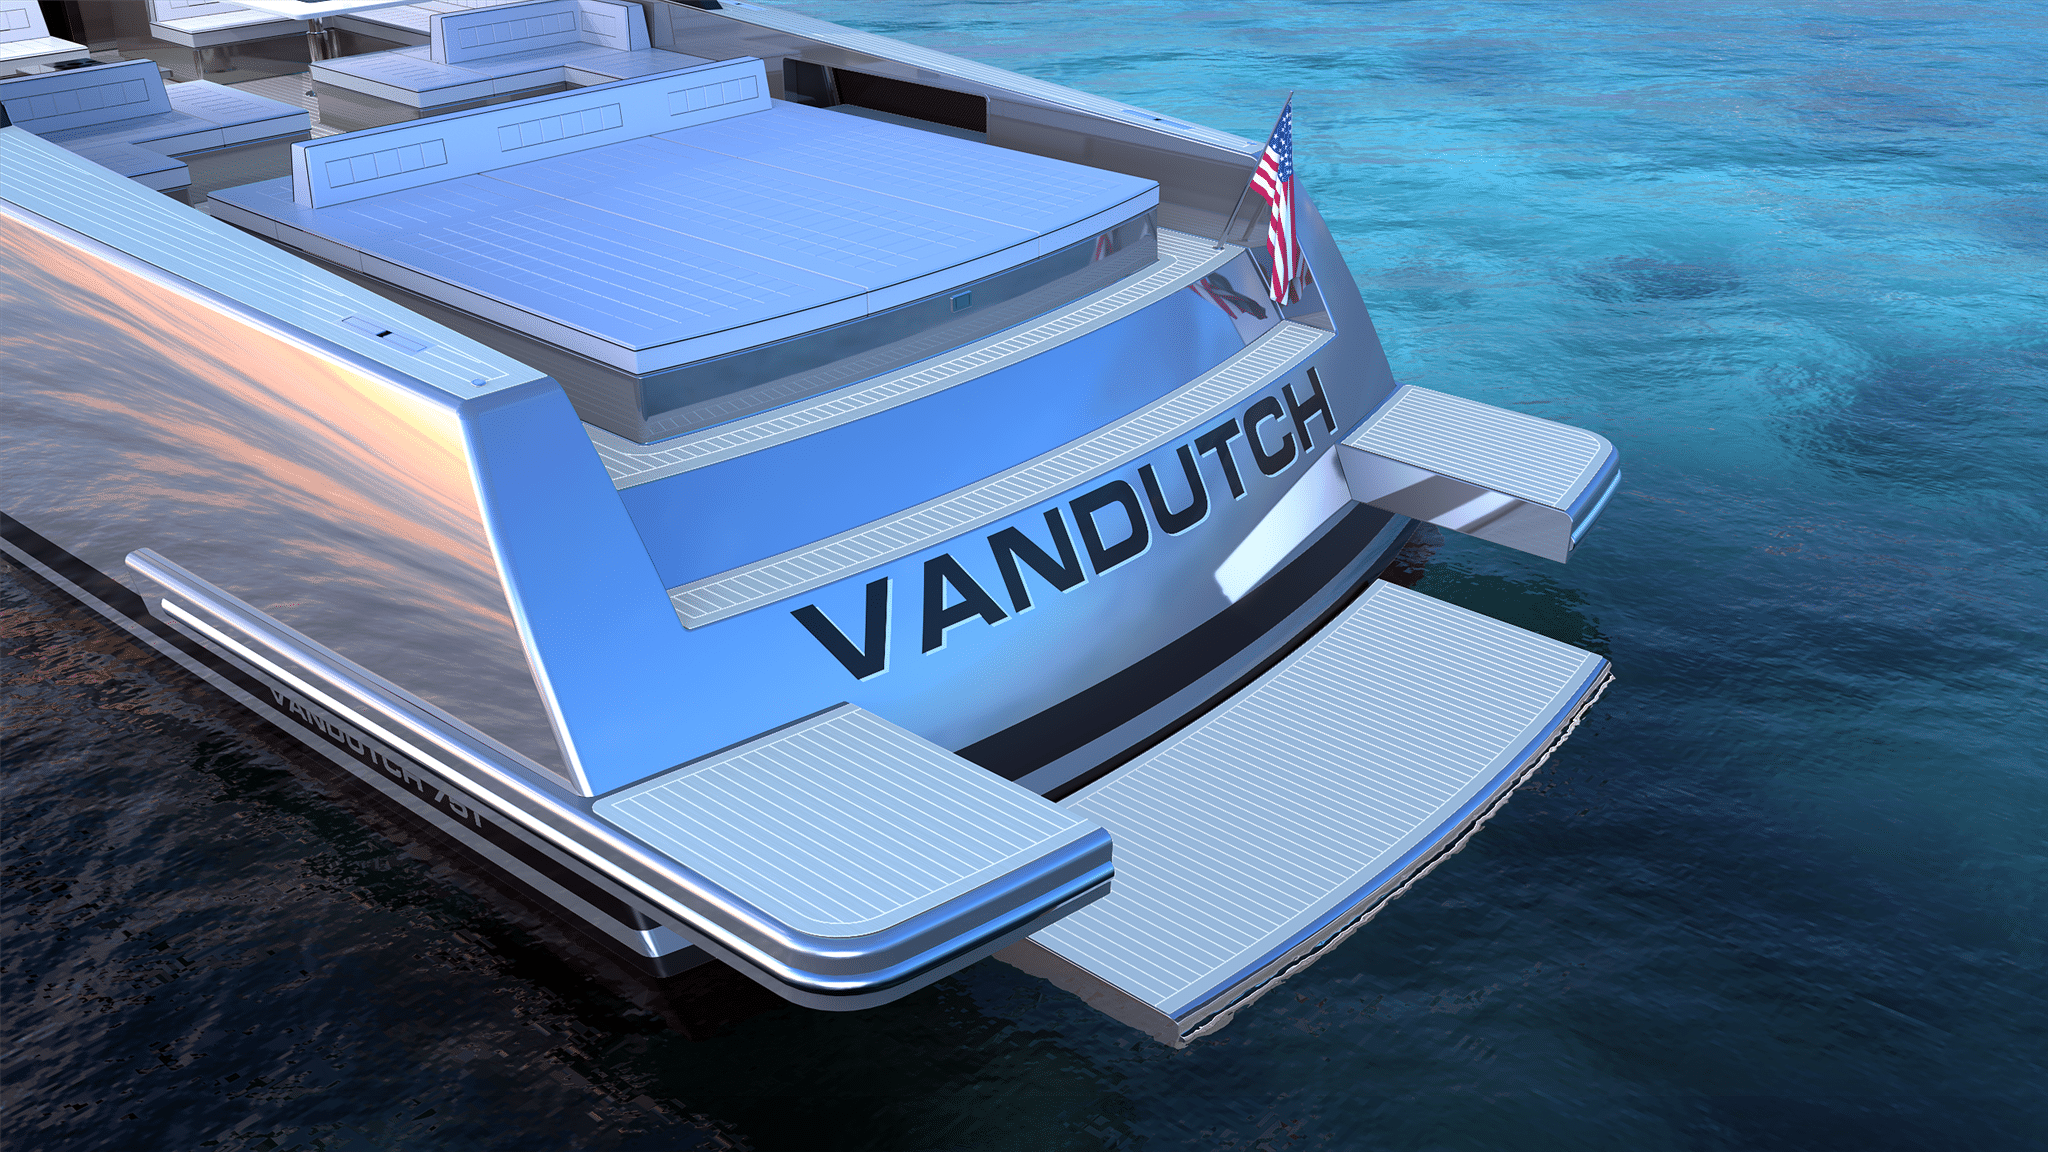 VanDutch for charter